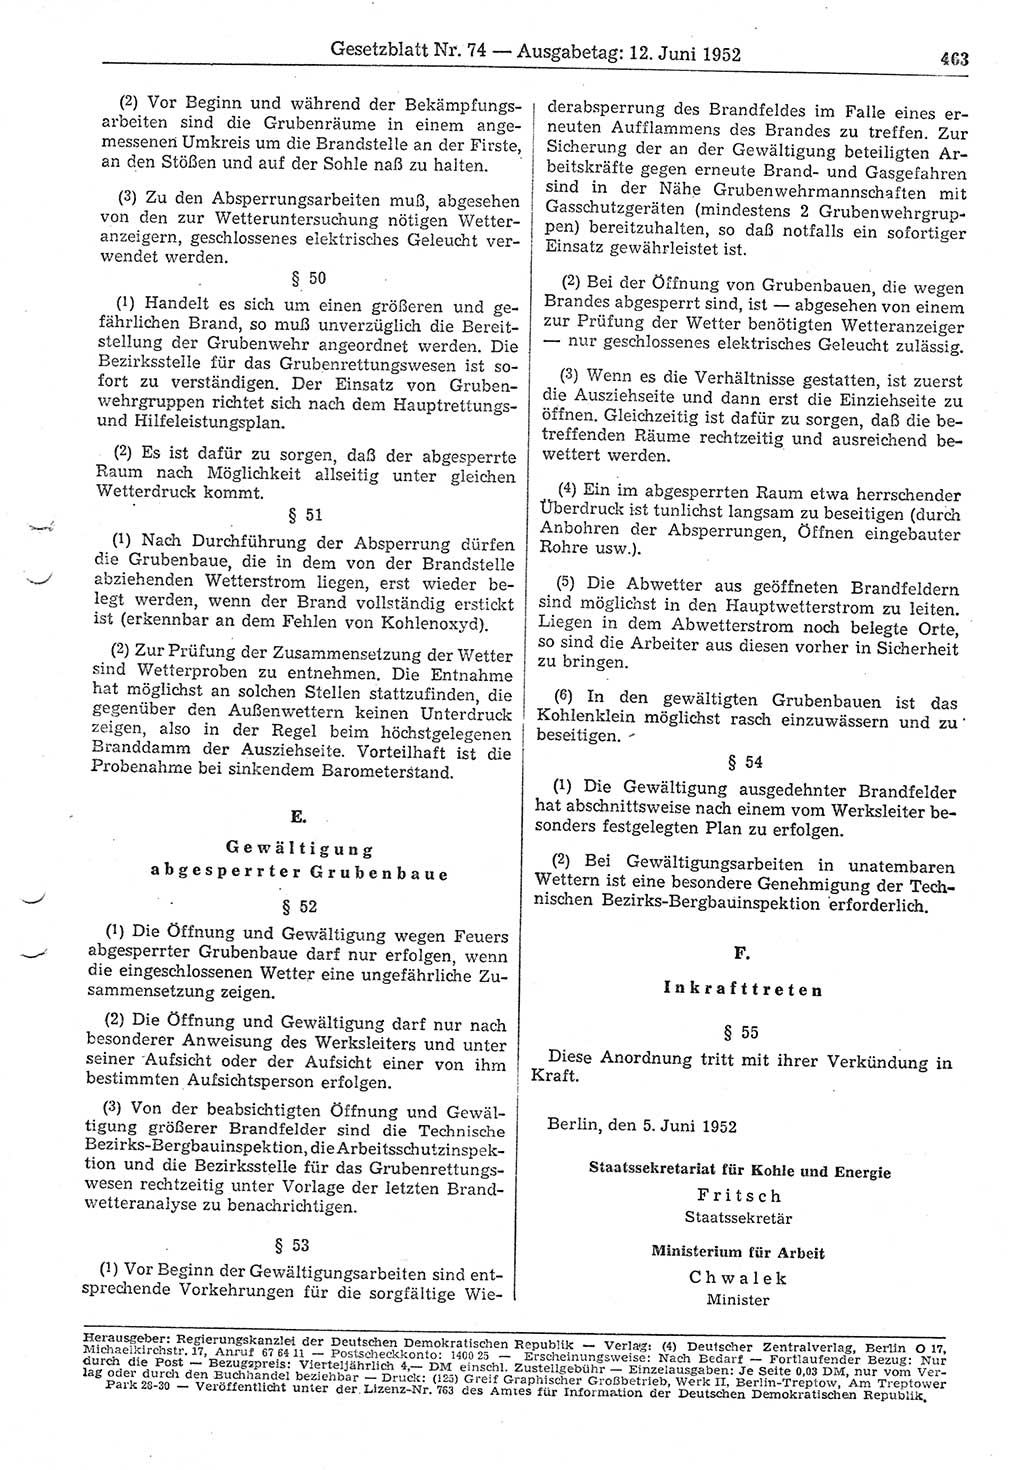 Gesetzblatt (GBl.) der Deutschen Demokratischen Republik (DDR) 1952, Seite 463 (GBl. DDR 1952, S. 463)